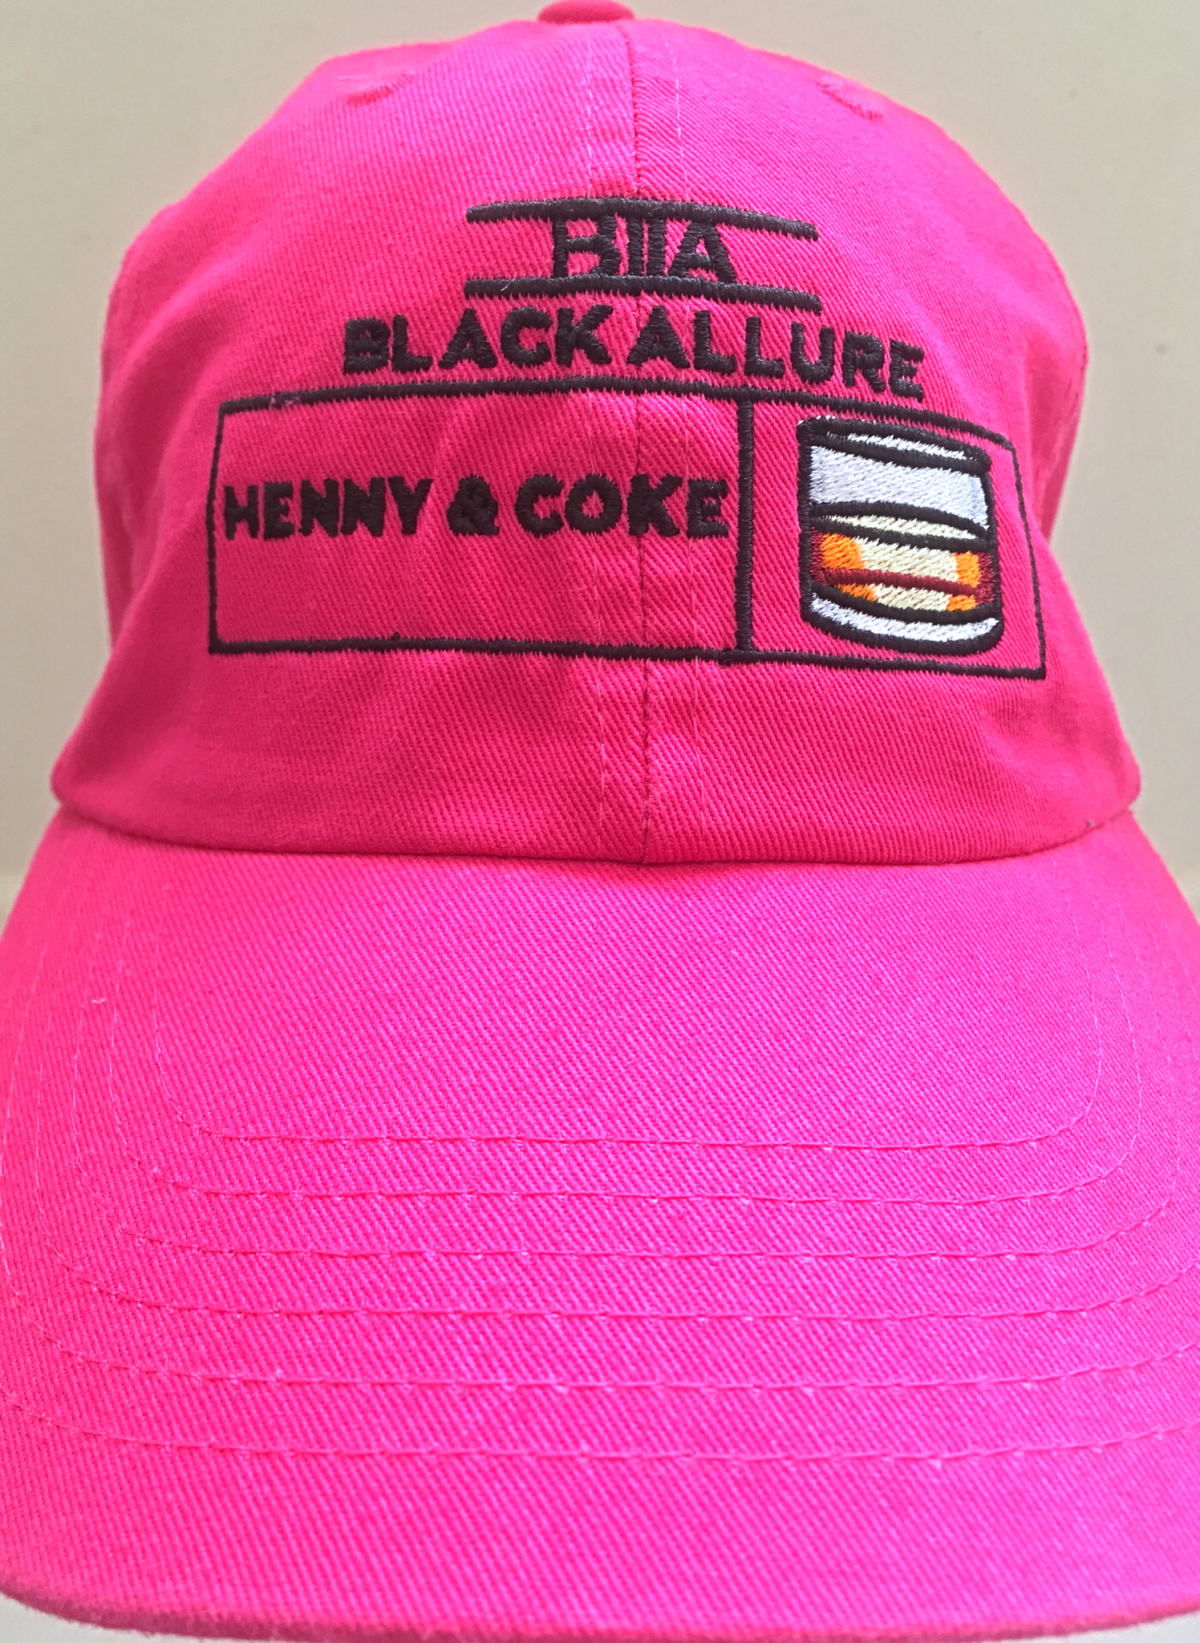 Henny & Coke Allure Neon Pink